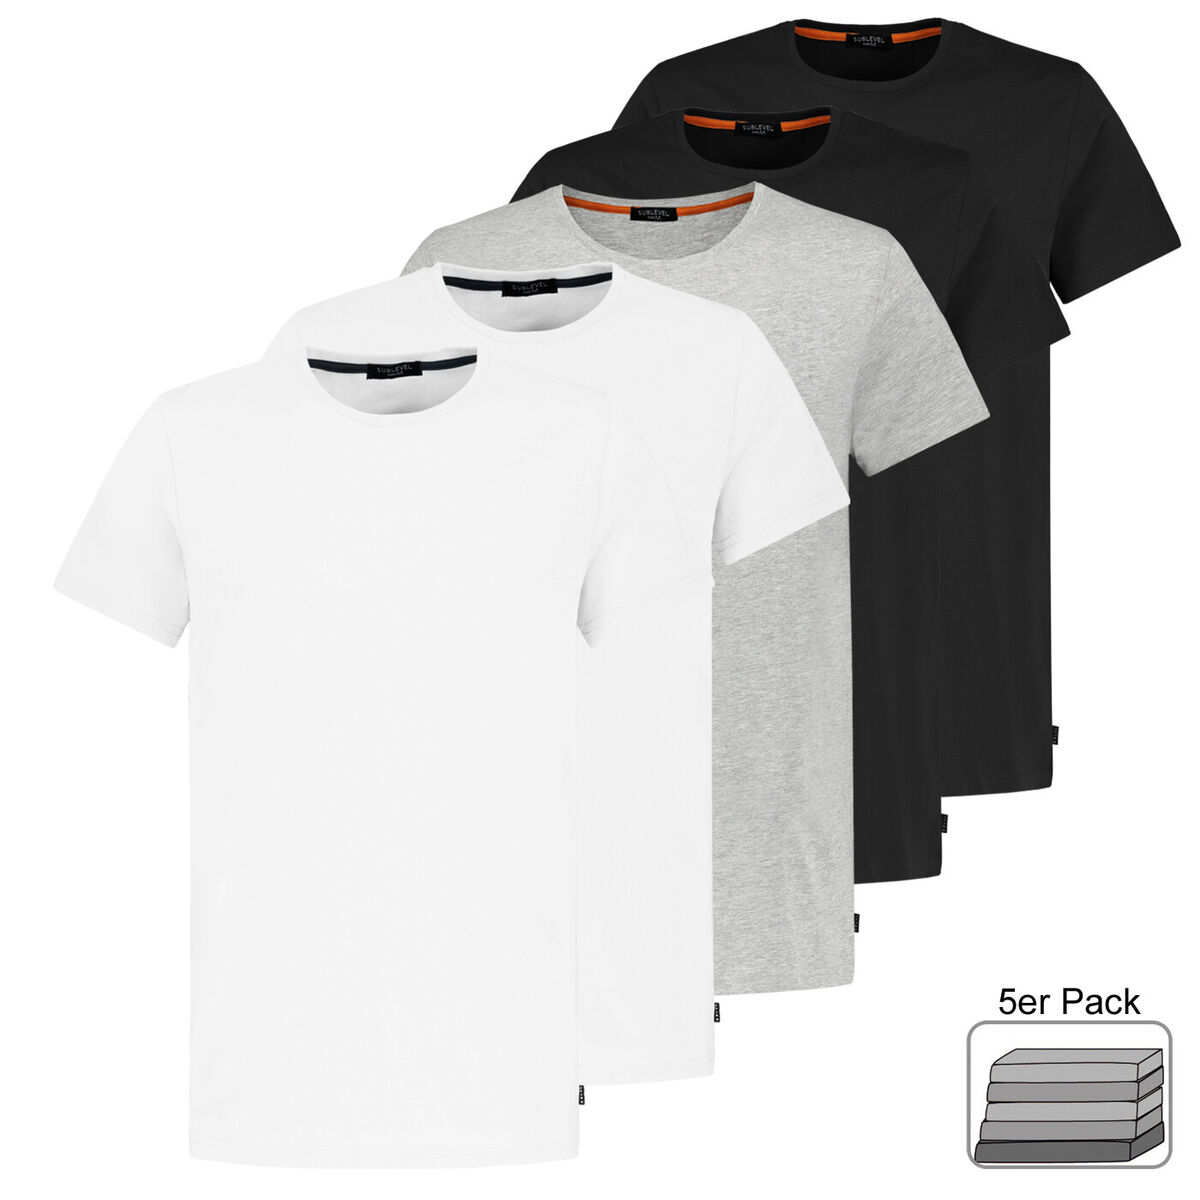 Sublevel Herren T-Shirt kurz arm Shirt 5er Pack Freizeit Basic Baumwolle  Sommer | eBay